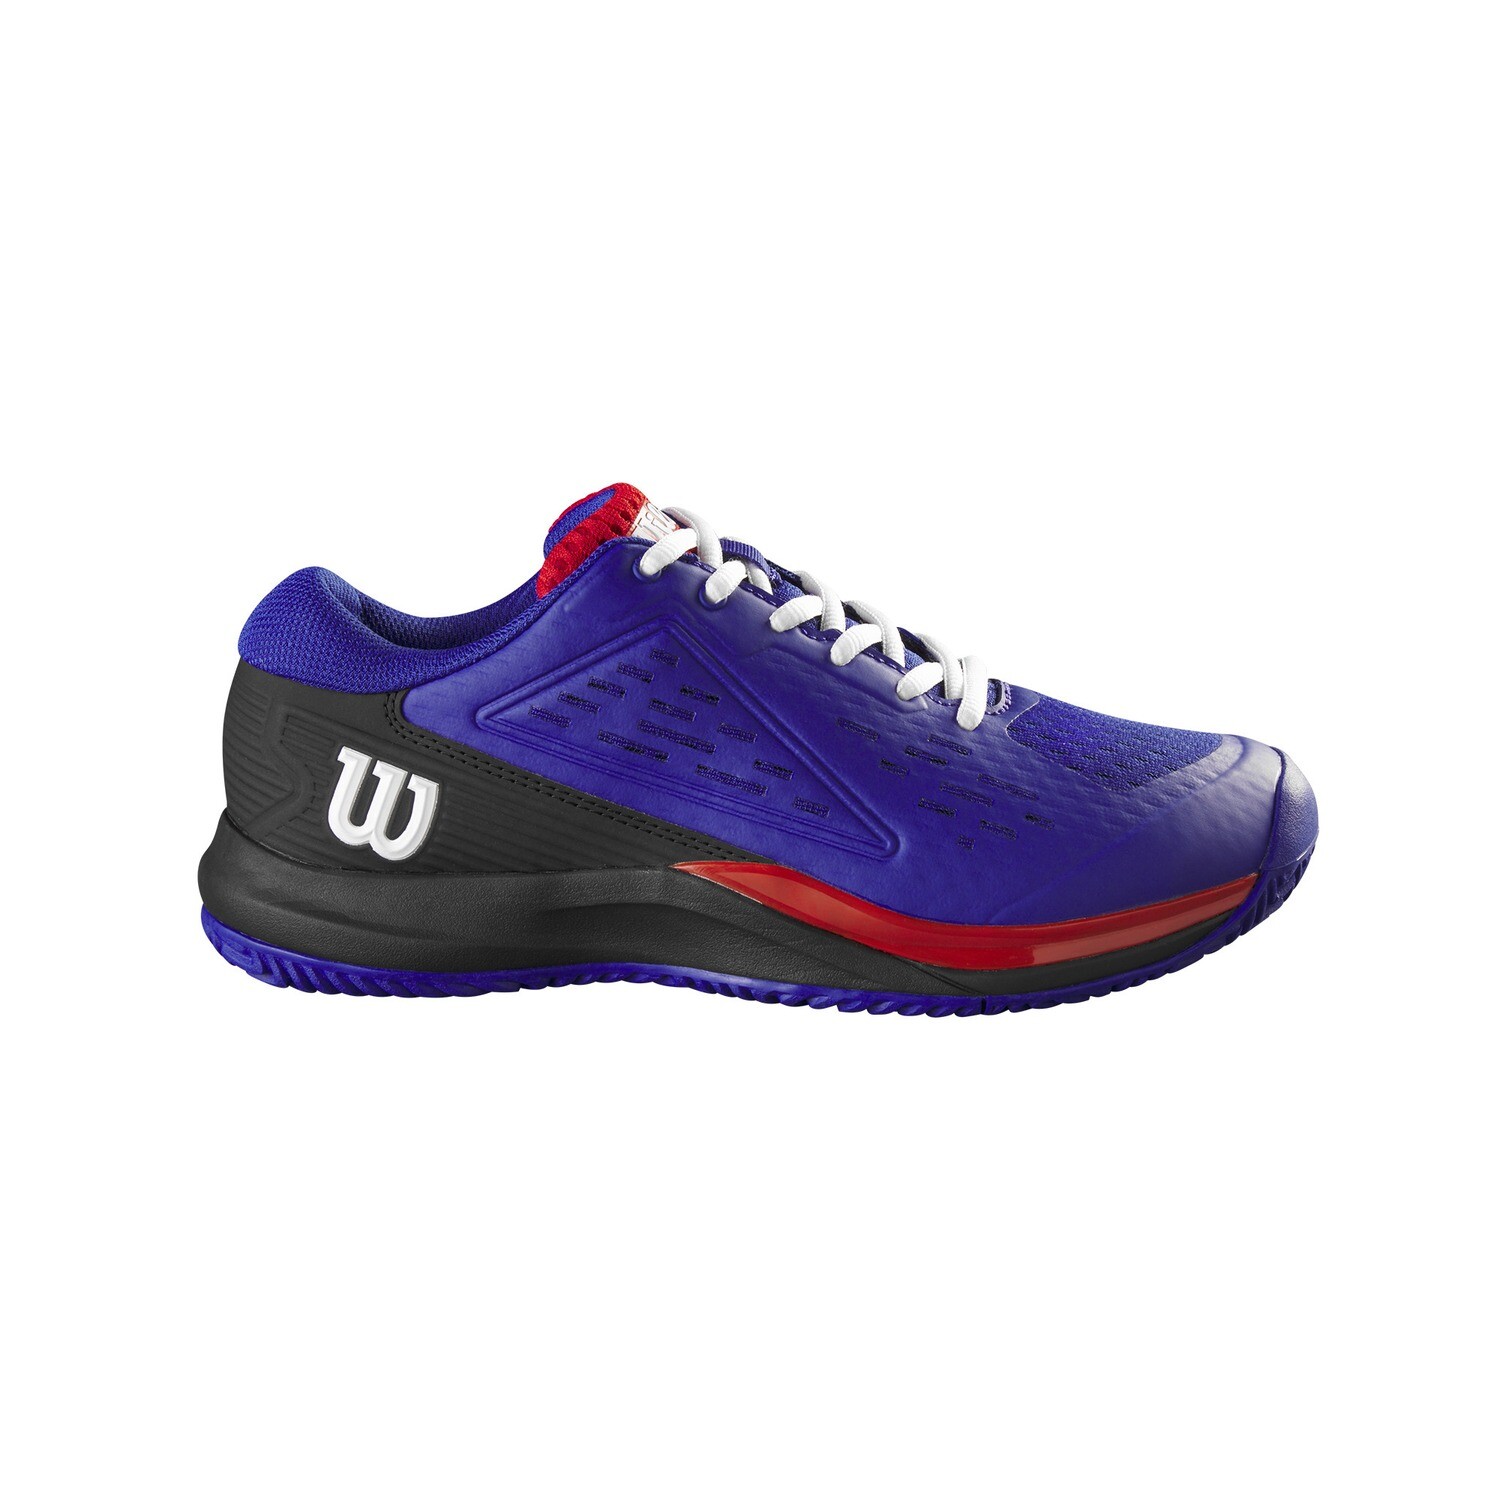 Wilson Rush Pro Ace Junior Tennis Shoes, Size: 6.5